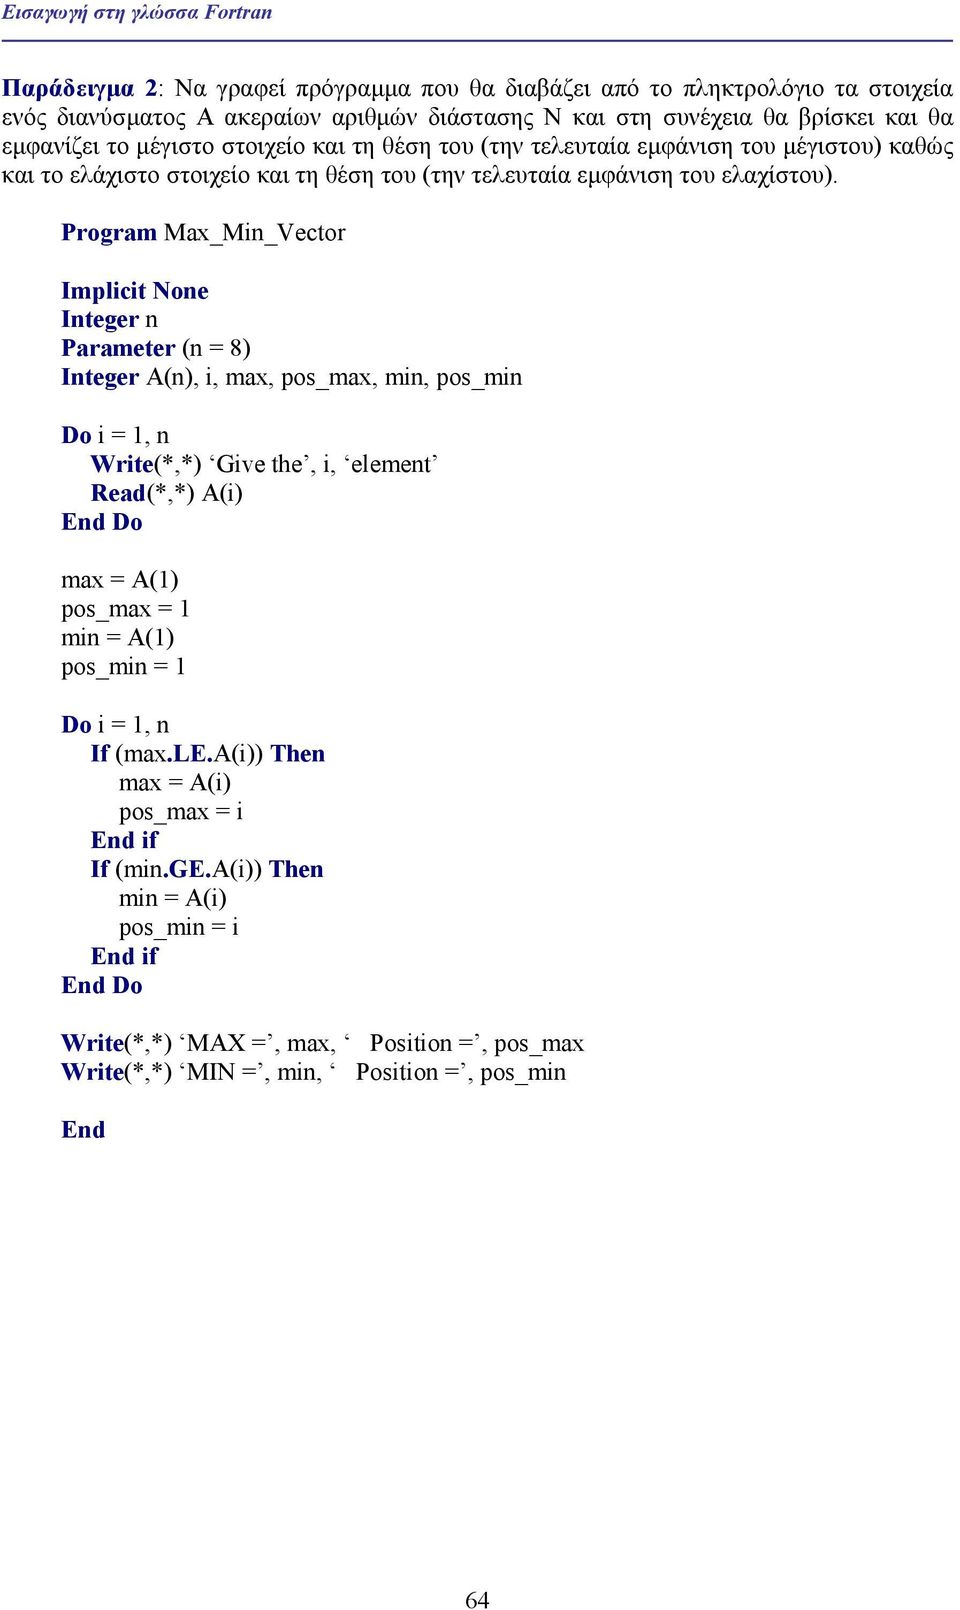 Program Max_Min_Vector Implicit None Integer n Parameter (n = 8) (n), i, max, pos_max, min, pos_min Write(*,*) Give the, i, element Read(*,*) A(i) max = A(1) pos_max = 1 min = A(1) pos_min